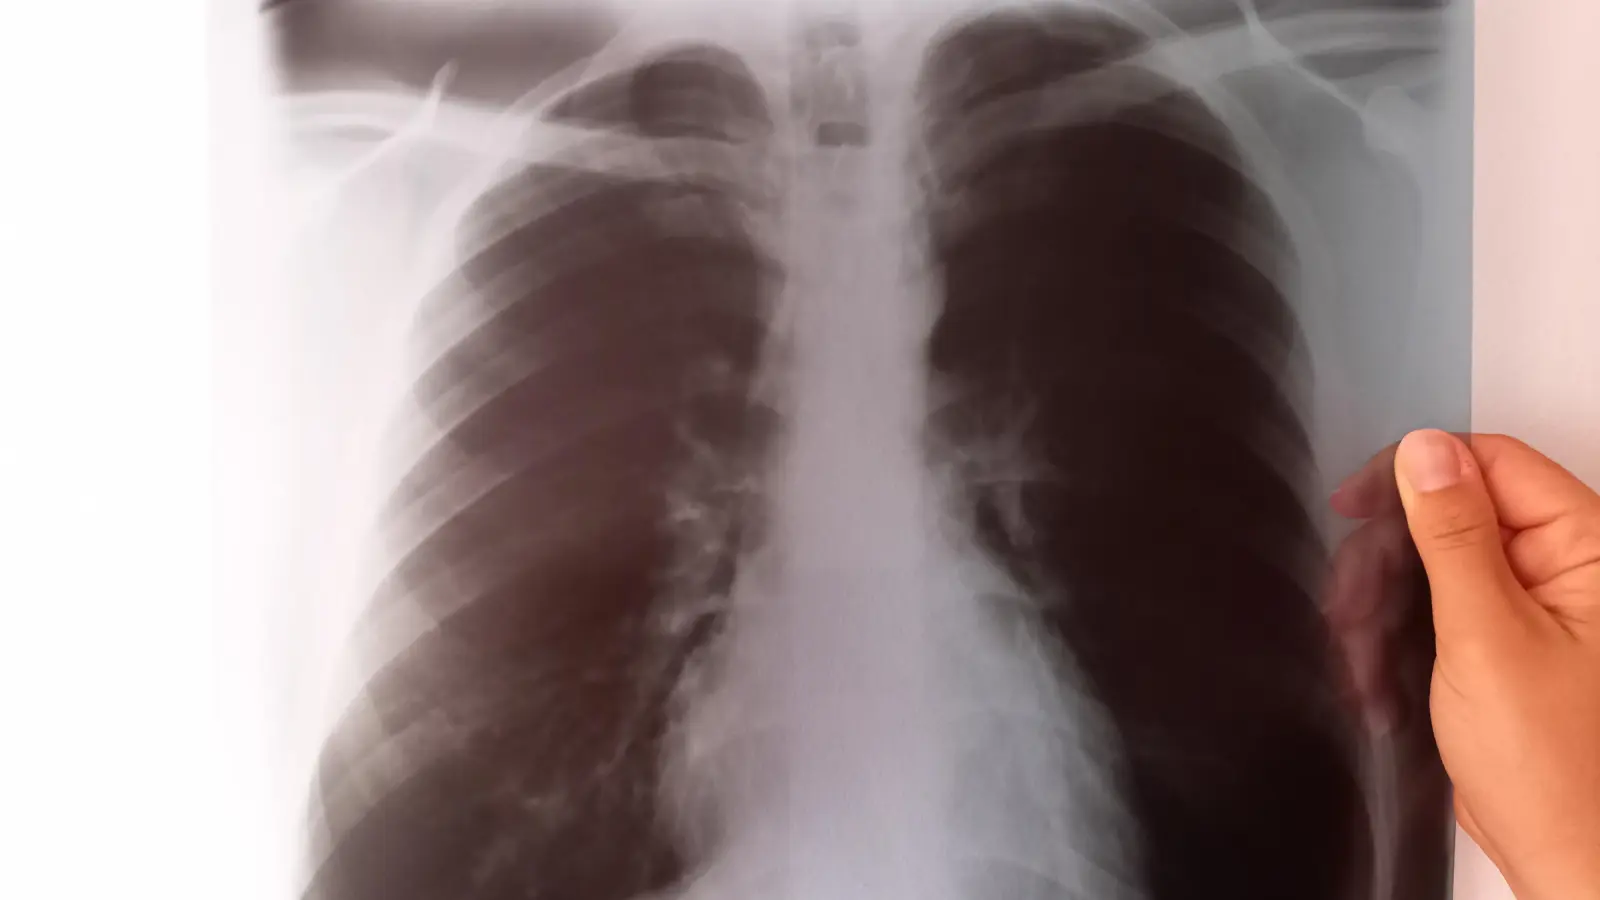 Röntgenbilder sind zu schade für die Restmülltonne. (Foto: Kommunale Abfallwirtschaft)